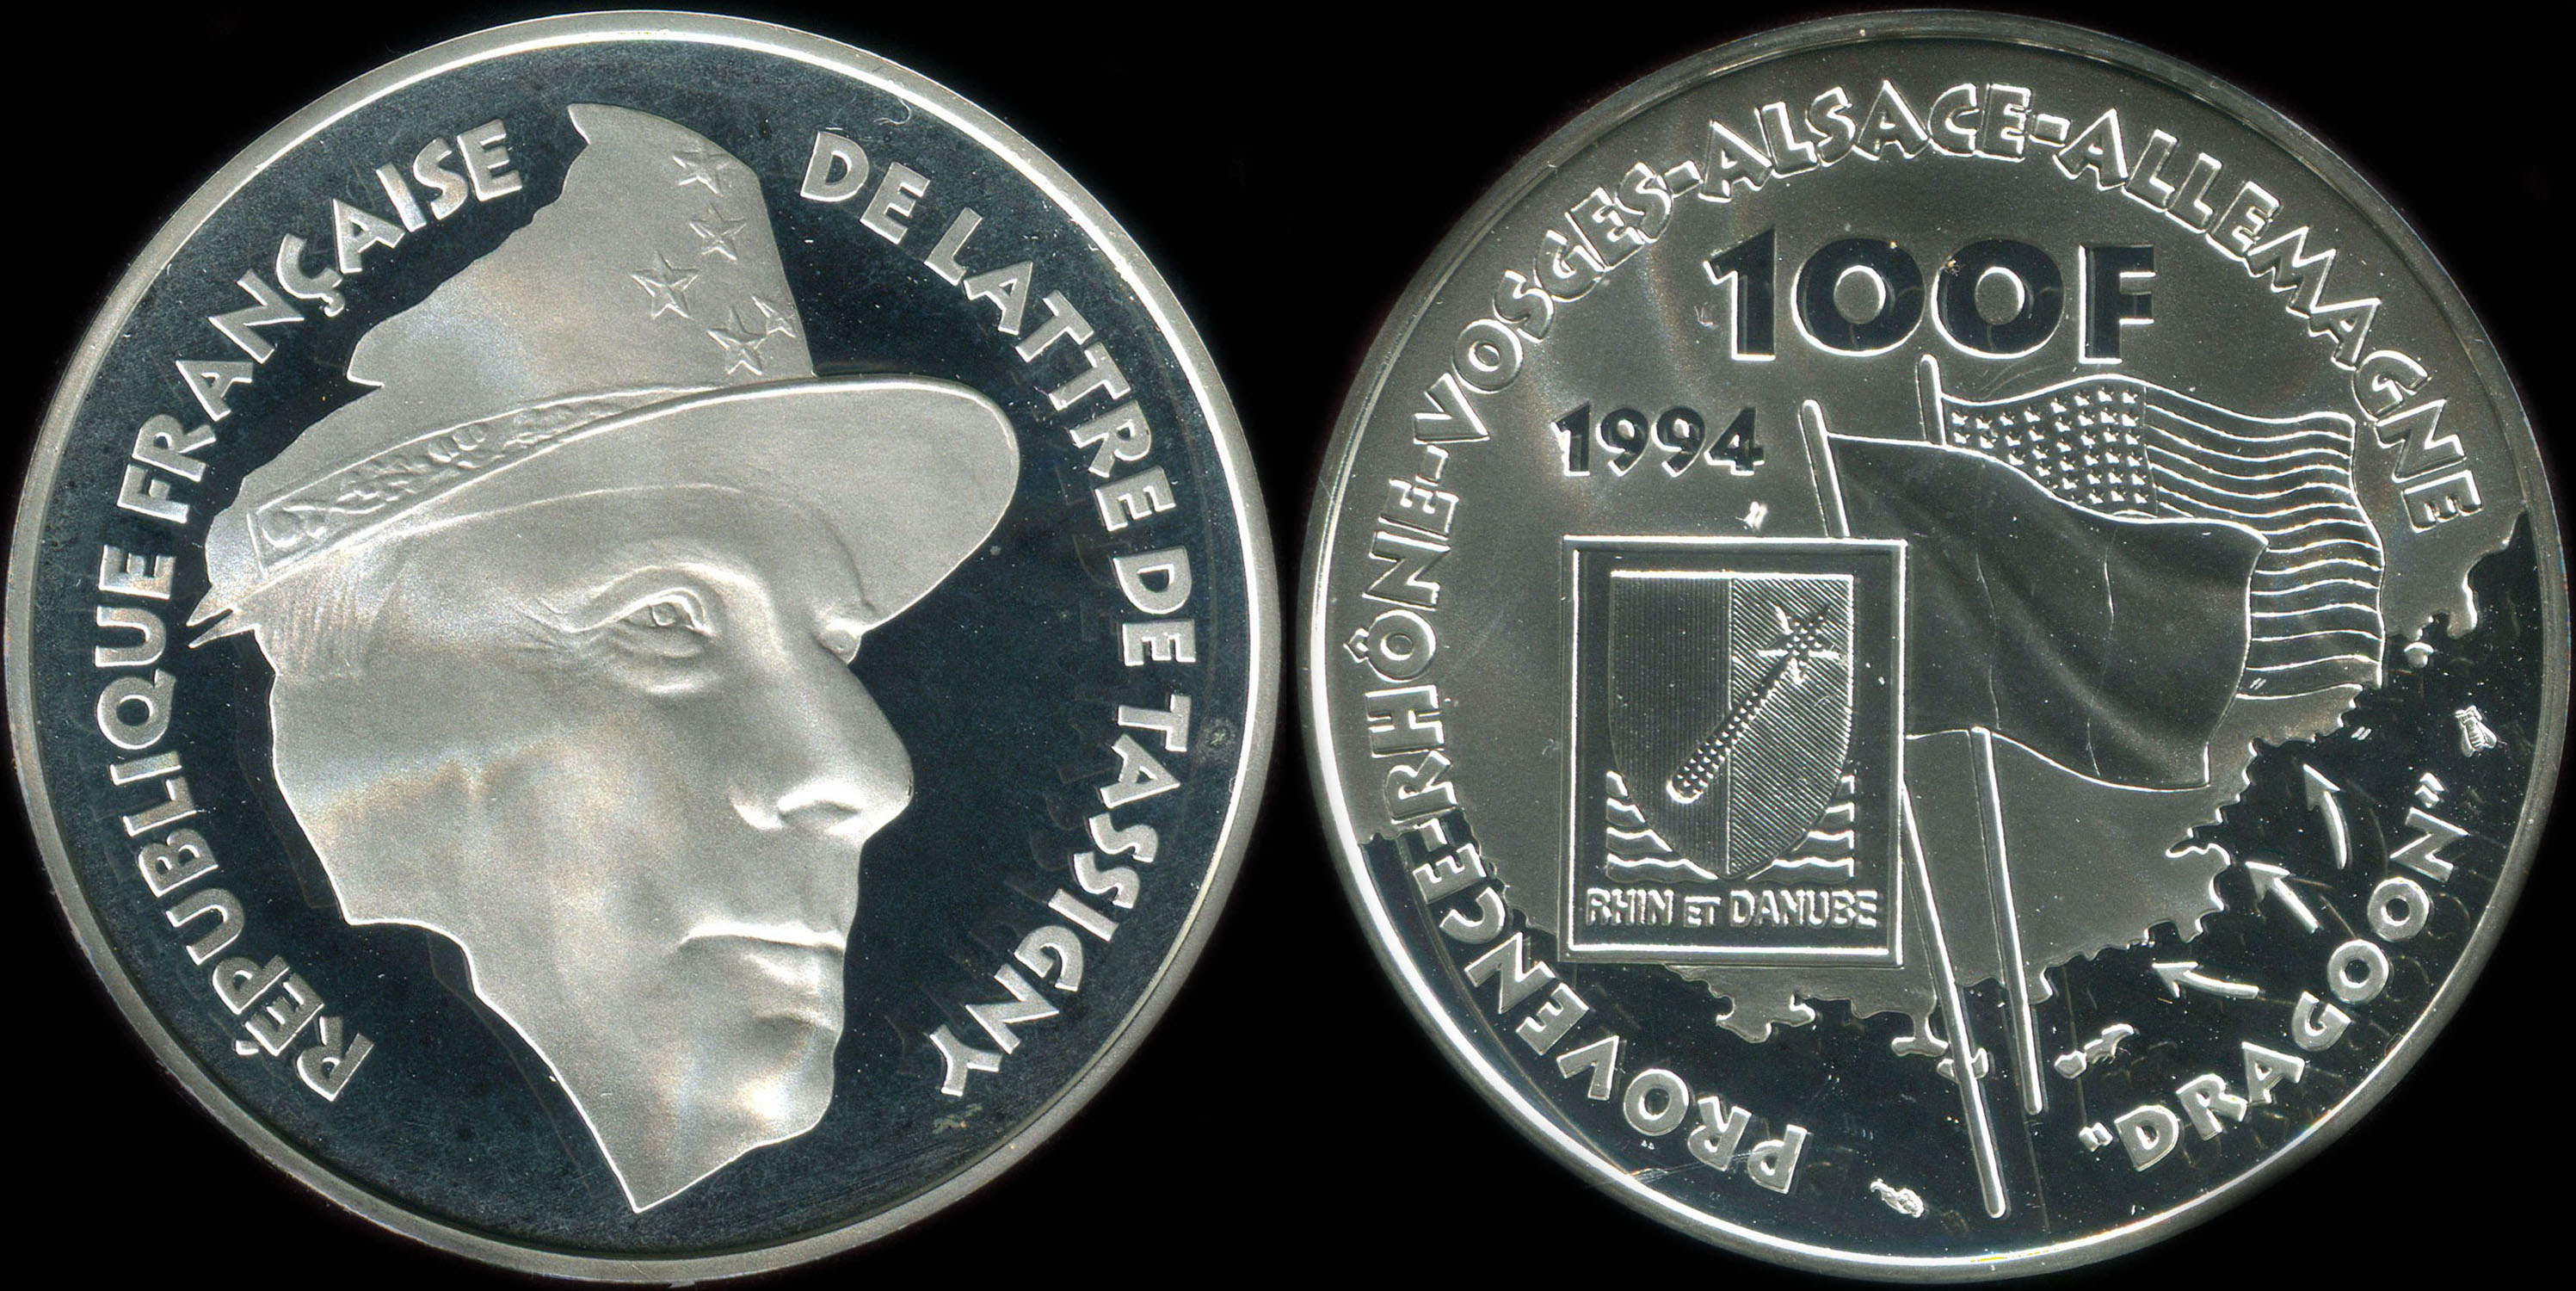 Pice de 100 francs 1994 - La Libert retrouve - De Lattre de Tassigny - Dbarquement de Provence